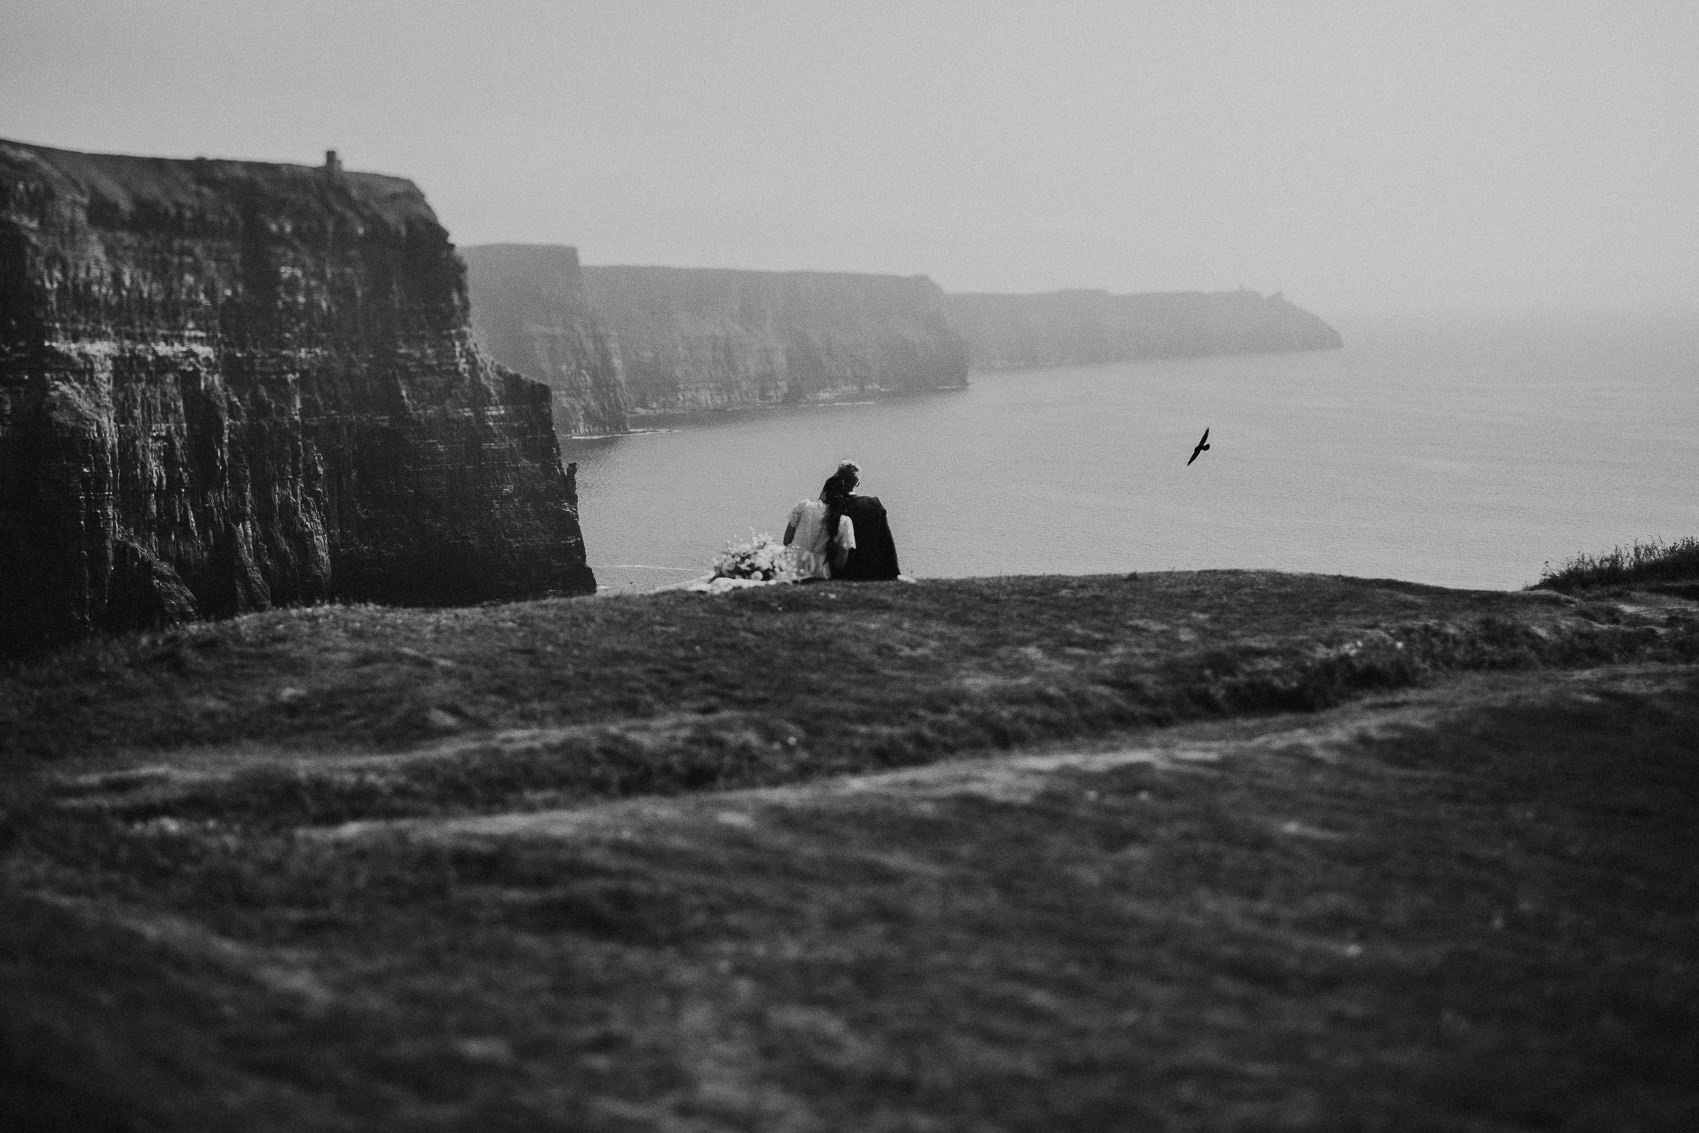 Irish Cliffs of Moher wedding Elopement shoot 678